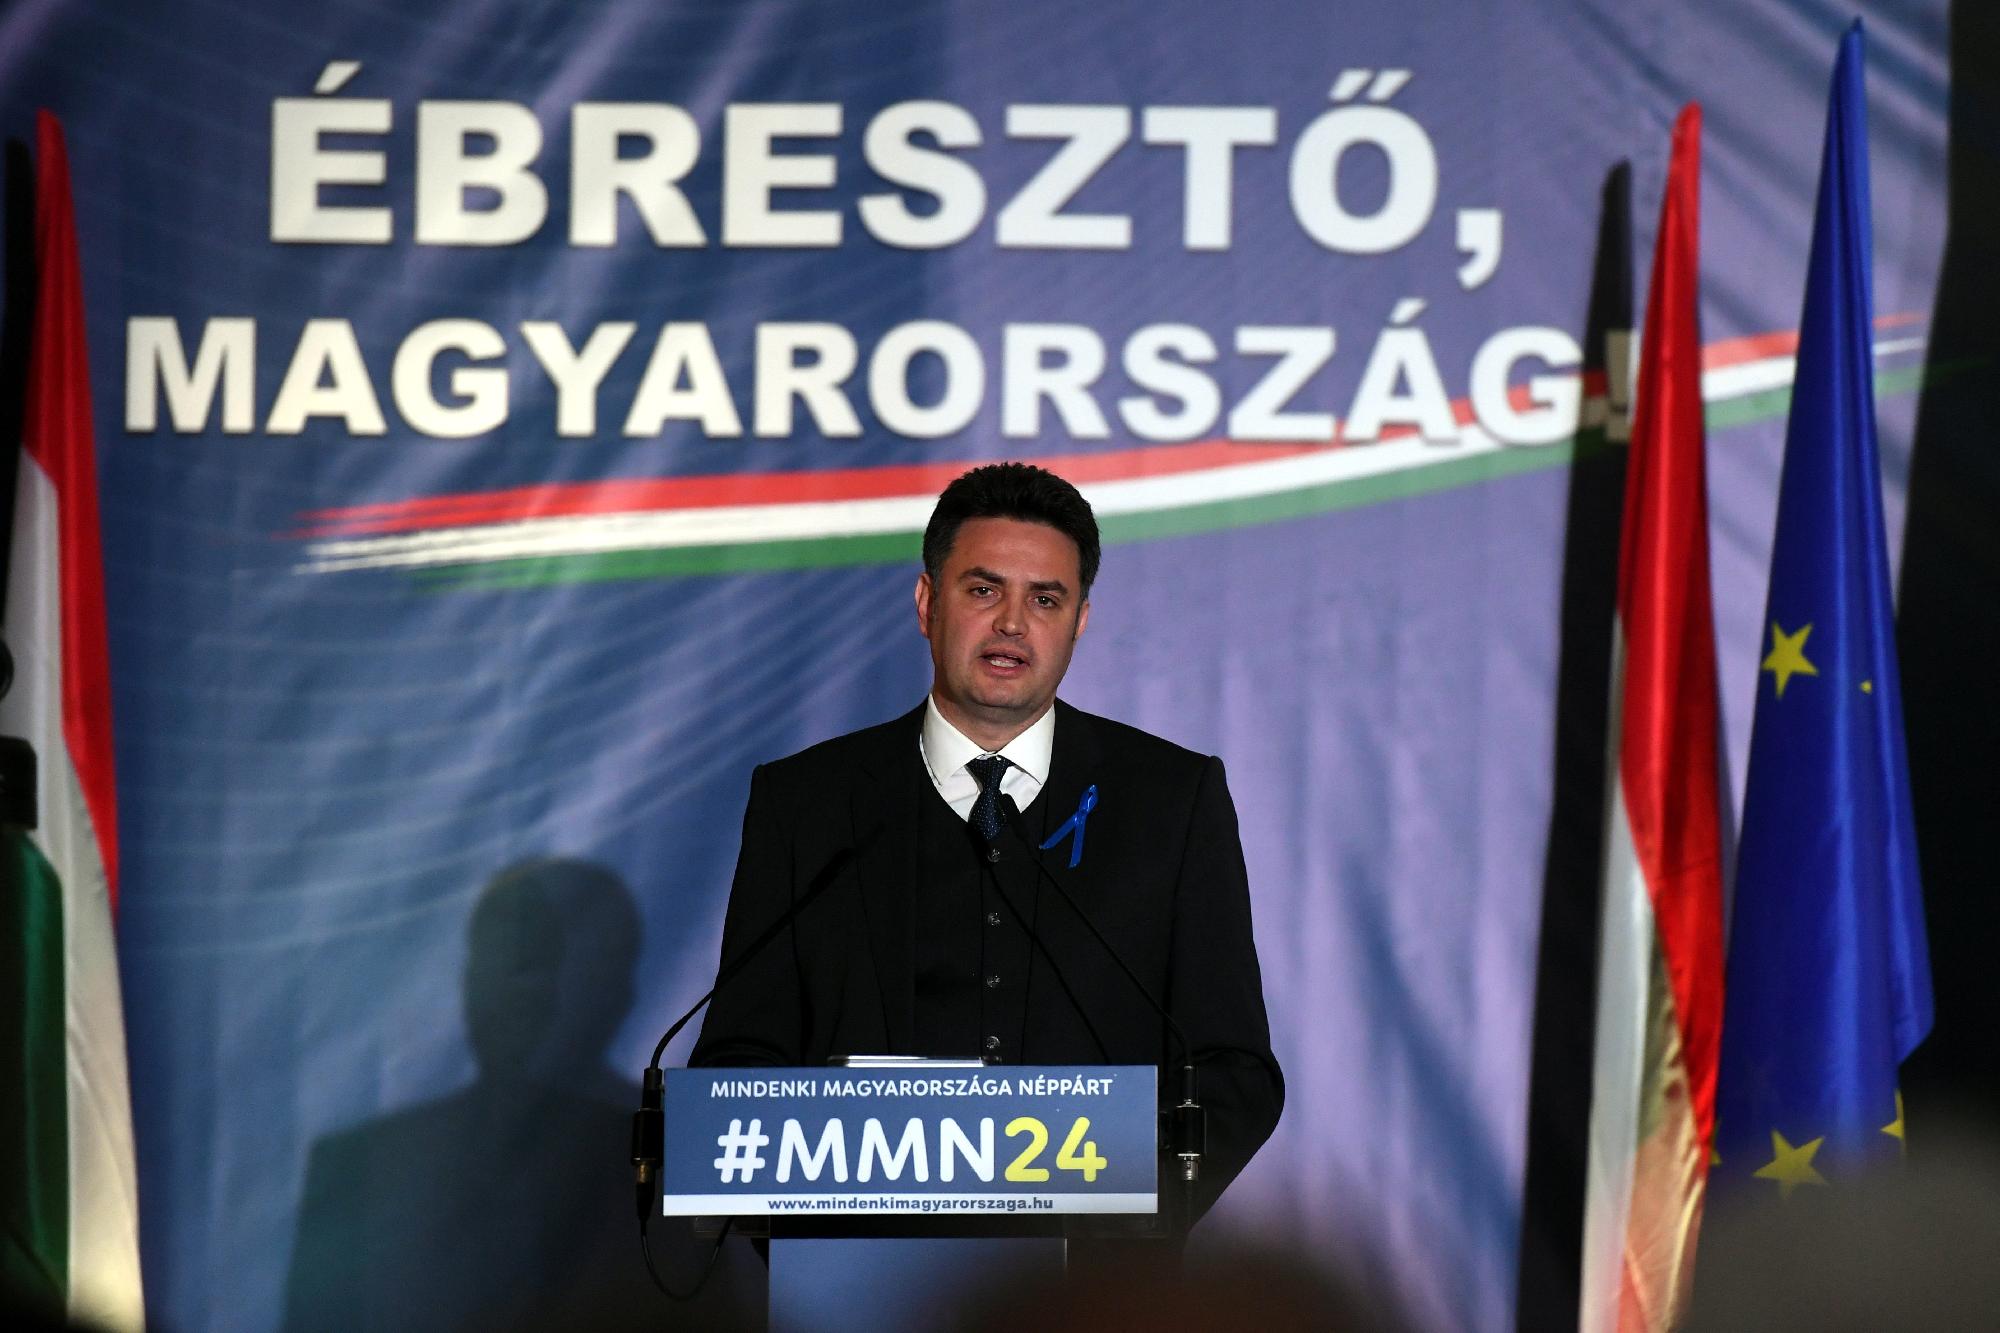 Voks 24 - A Mindenki Magyarországa Néppárt országos kampány